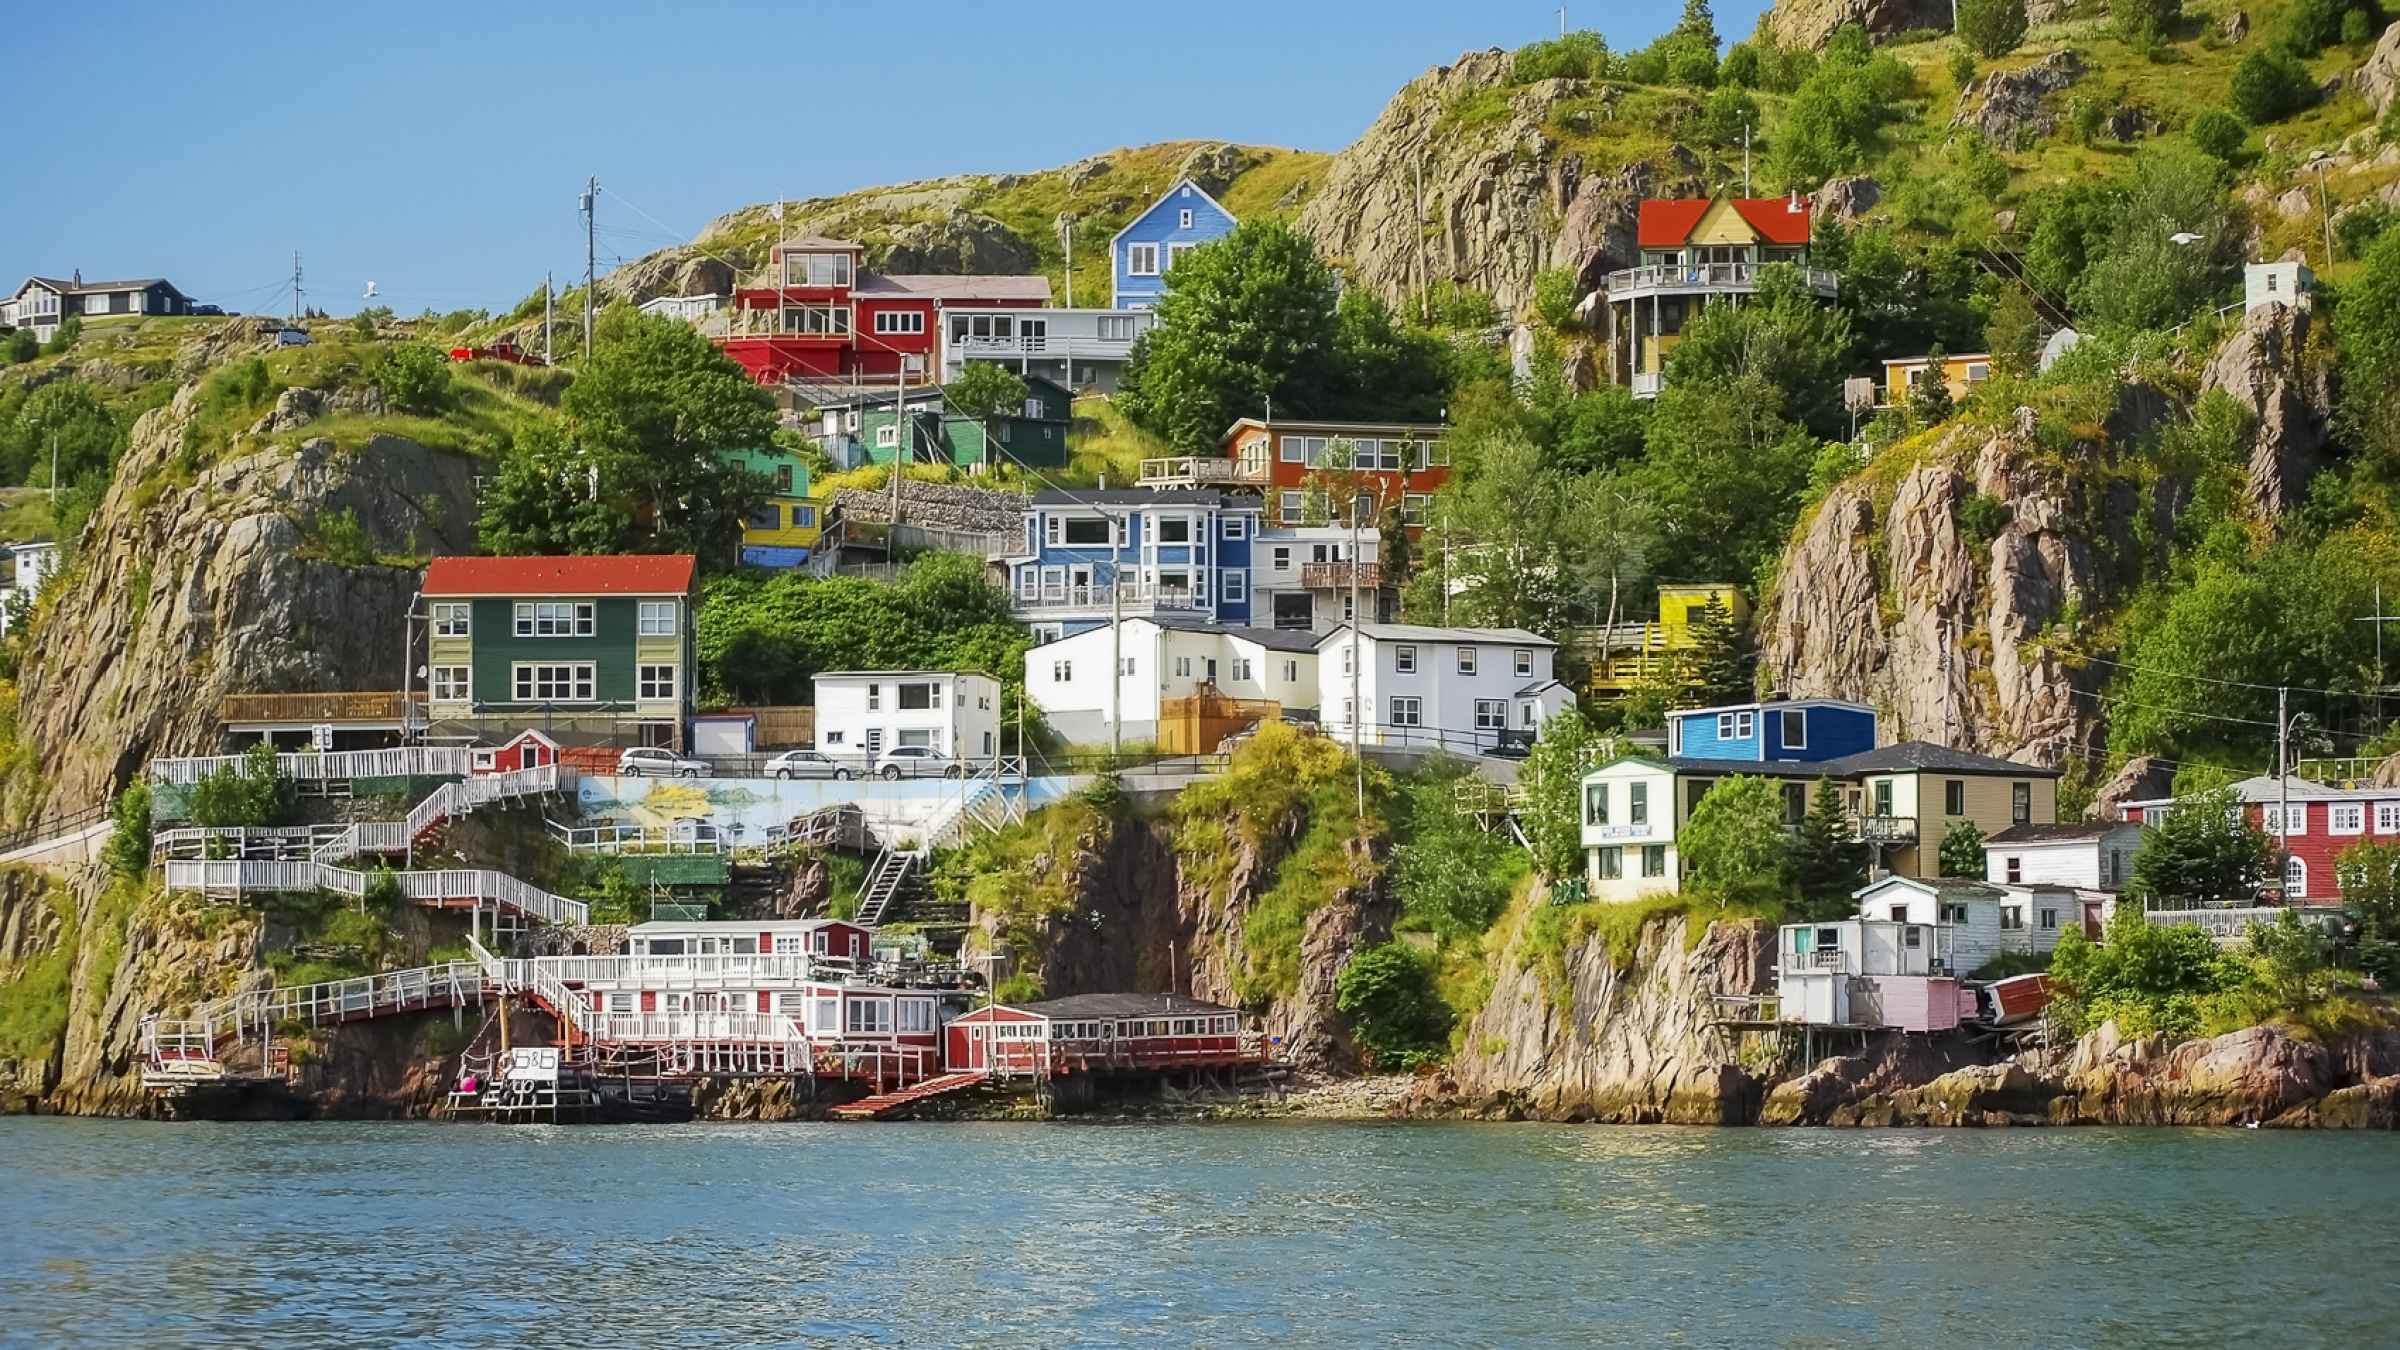 St. John’s, Newfoundland 2021 Top 10 Tours & Activities (with Photos